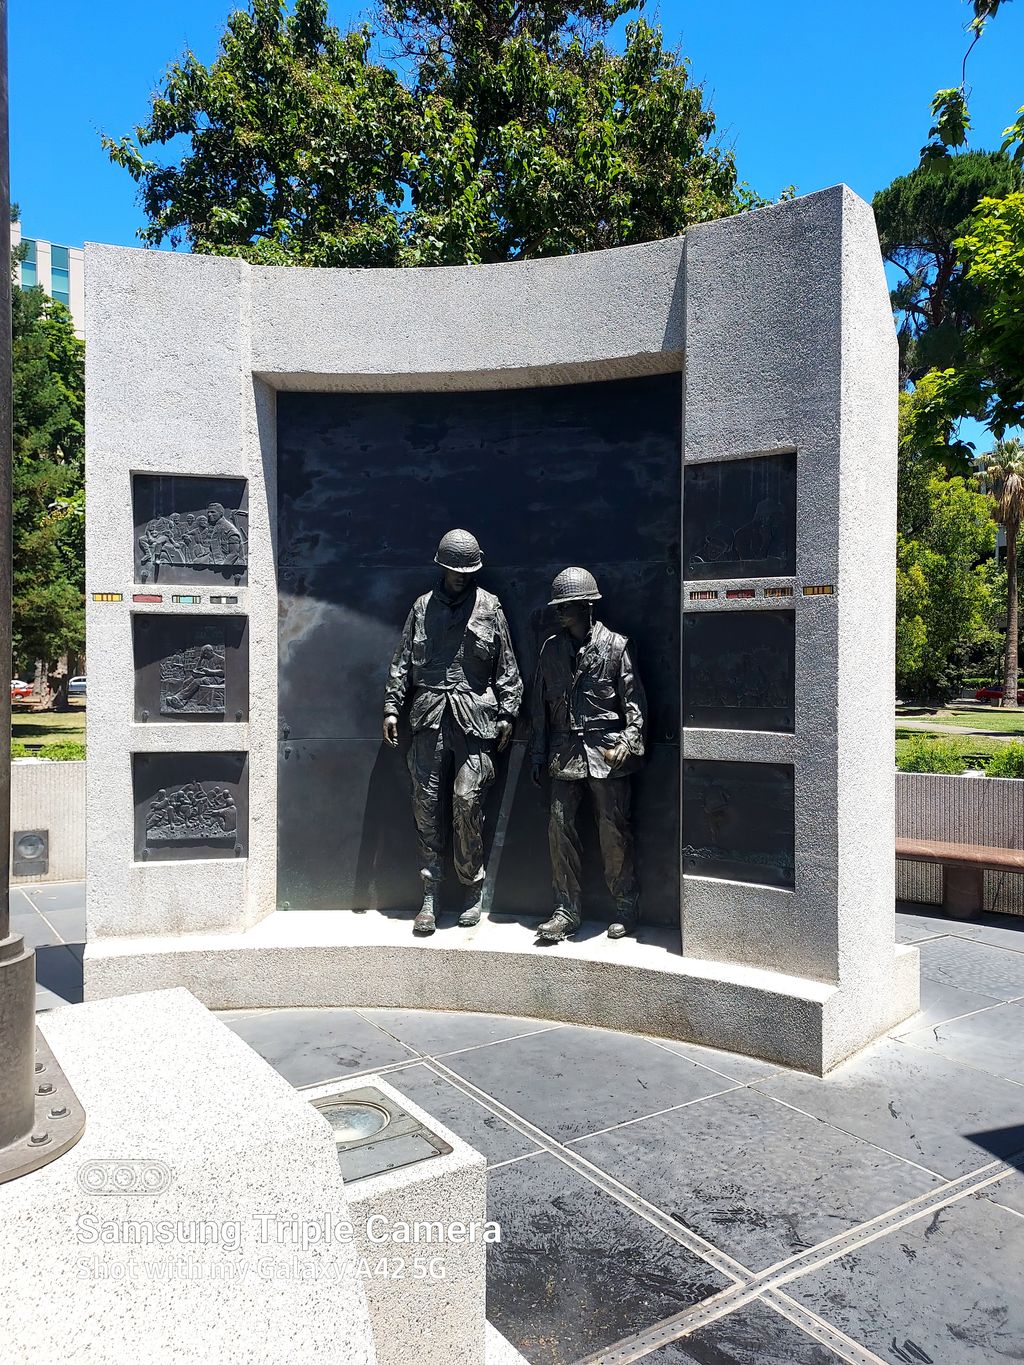 The-Civil-War-Memorial-Grove